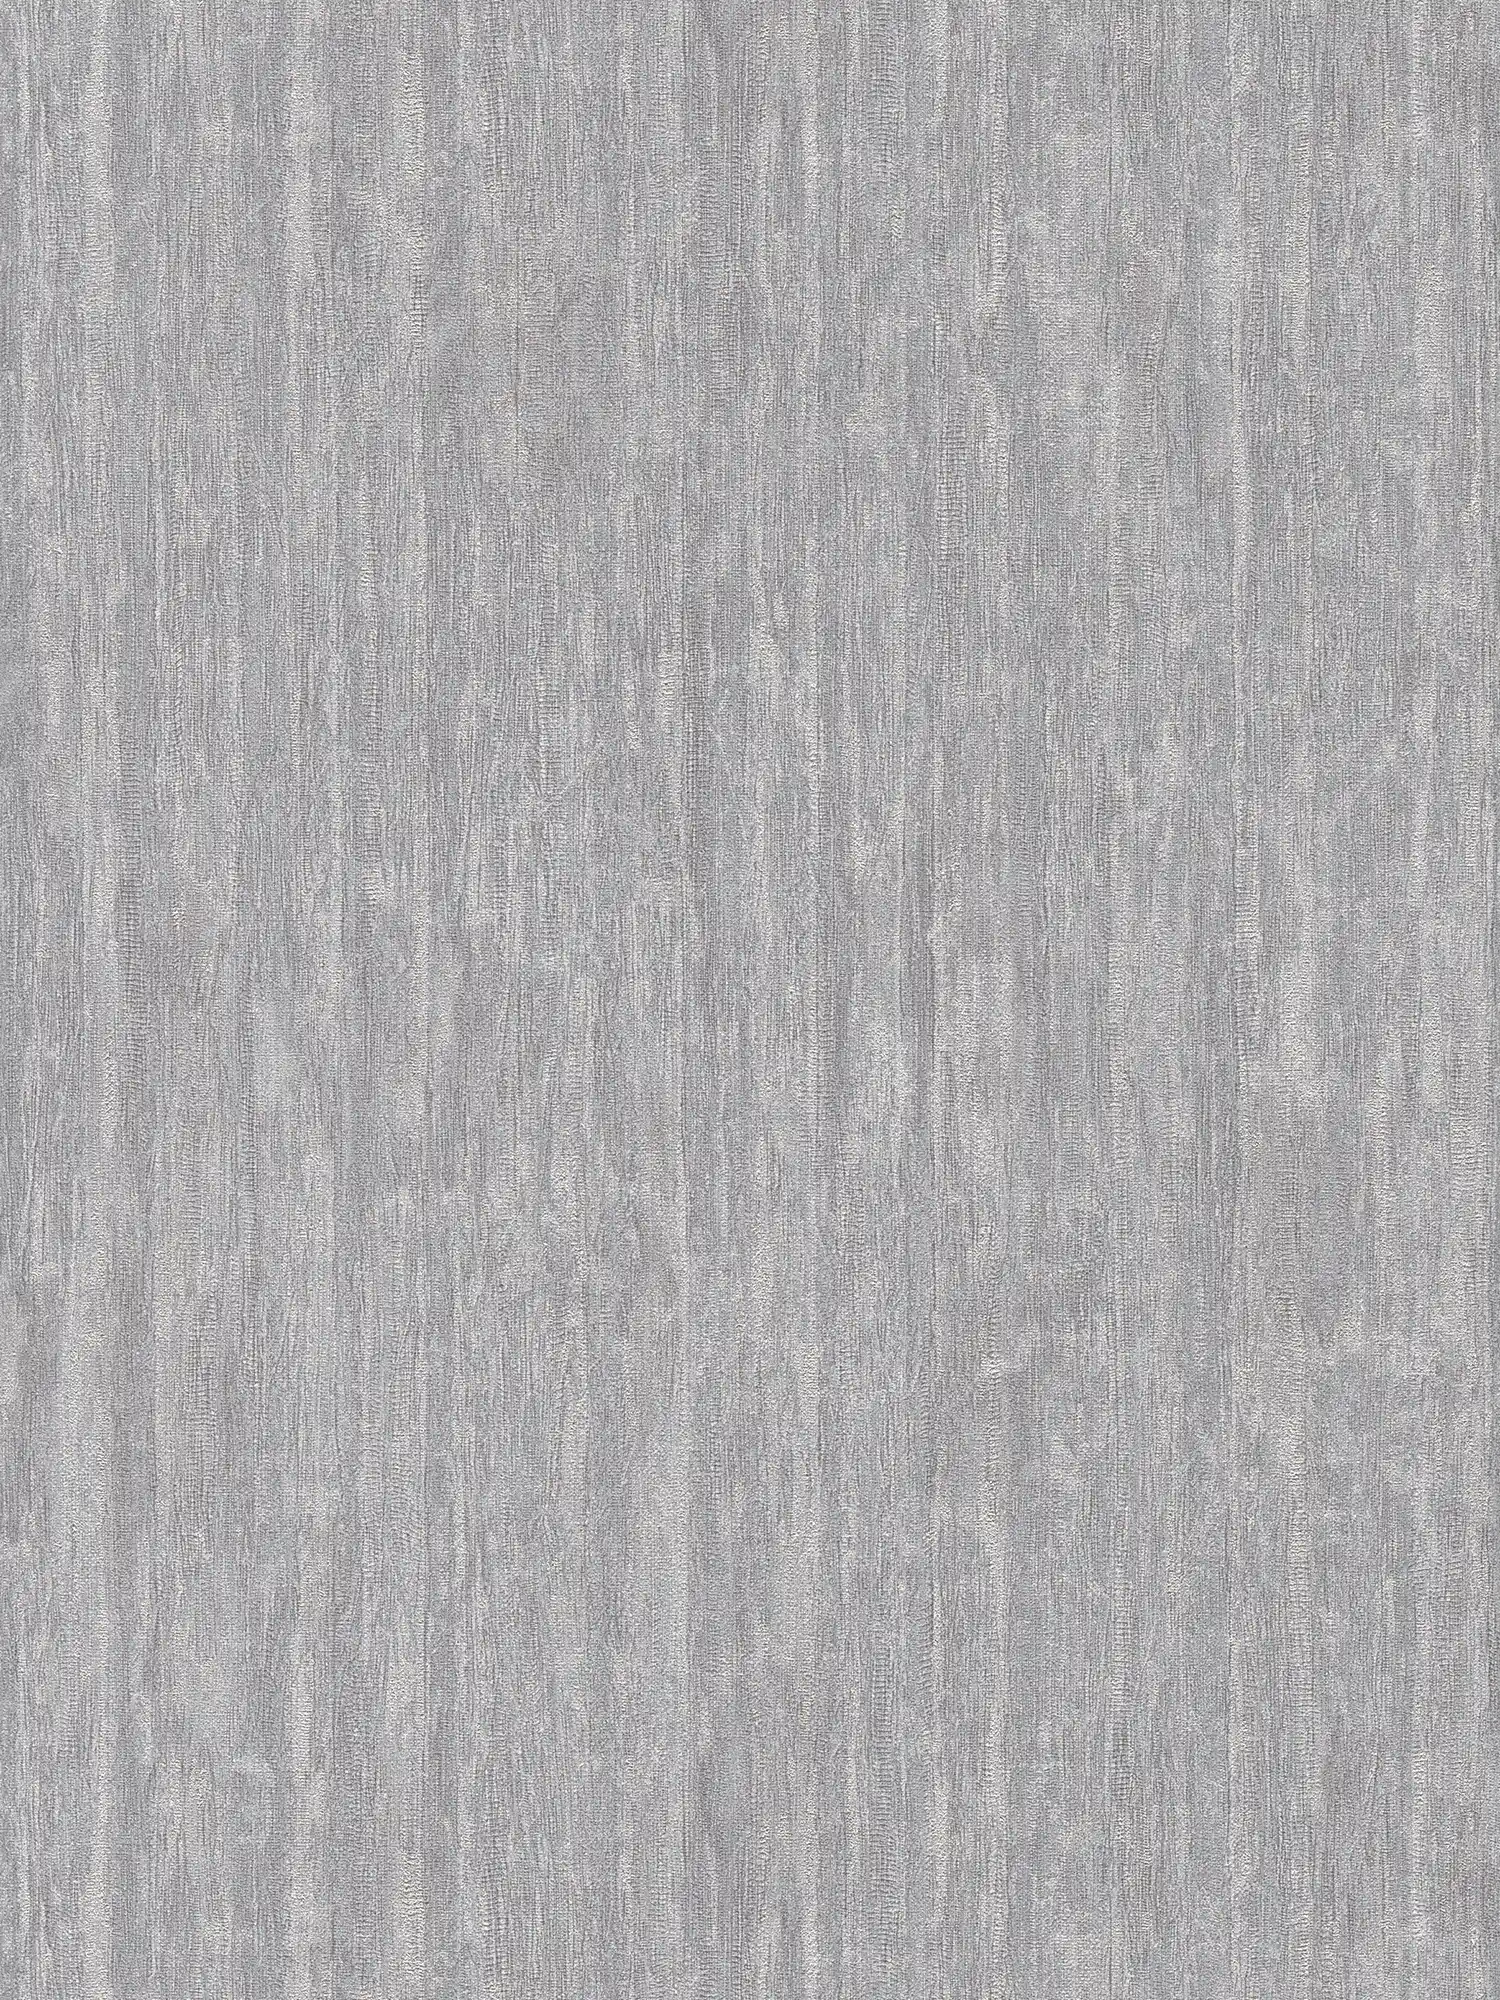 Leicht glänzende Tapete mit Linien Bemusterung – Grau, Silber, Metallic
